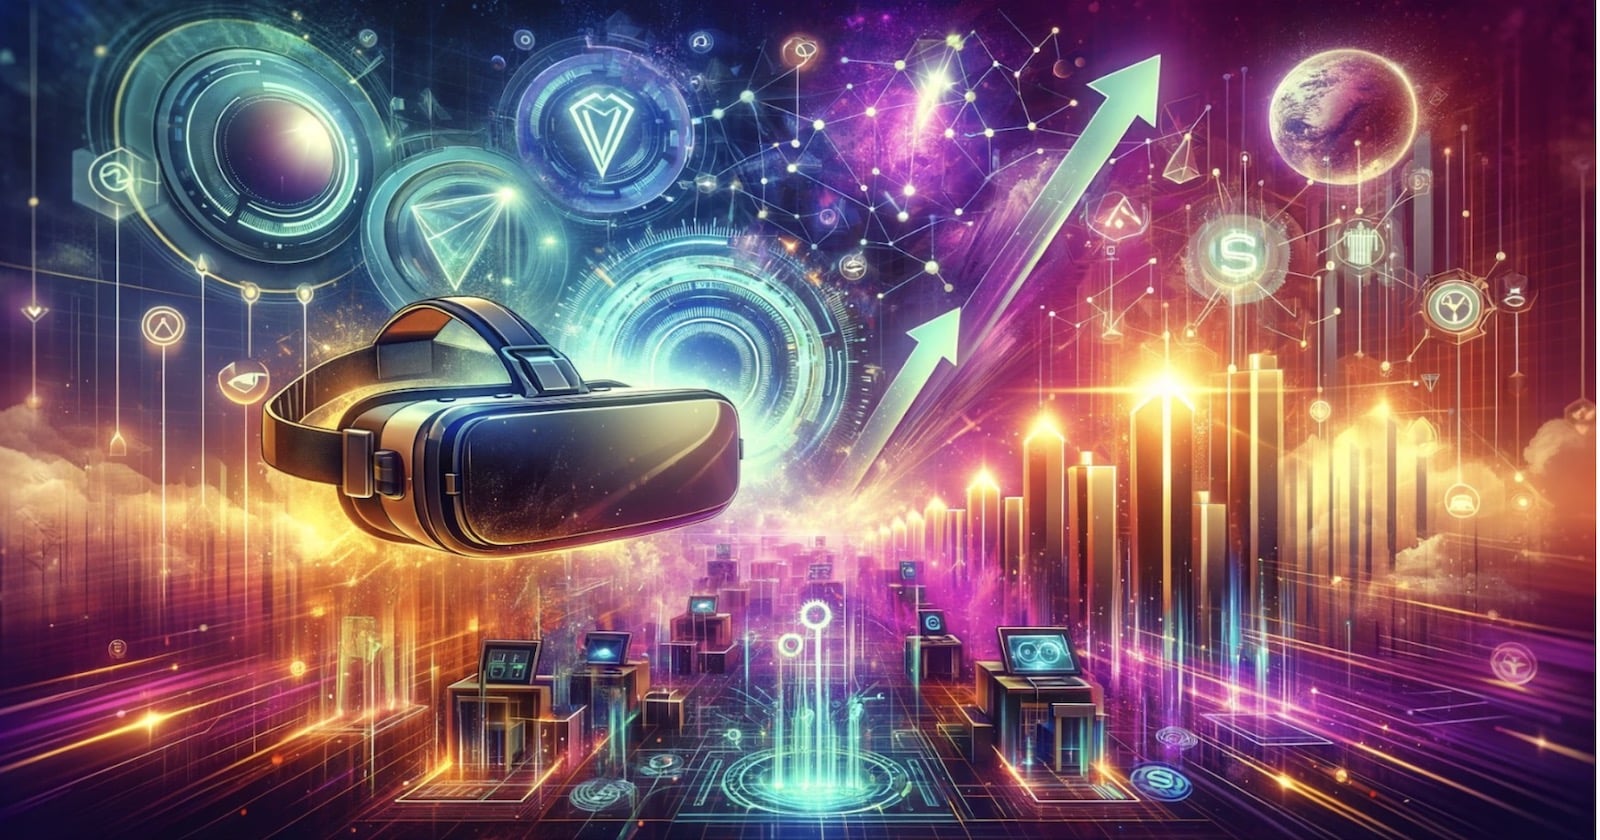 token 5th Scape deve atrair investidores que buscam qualidade em realidade virtual